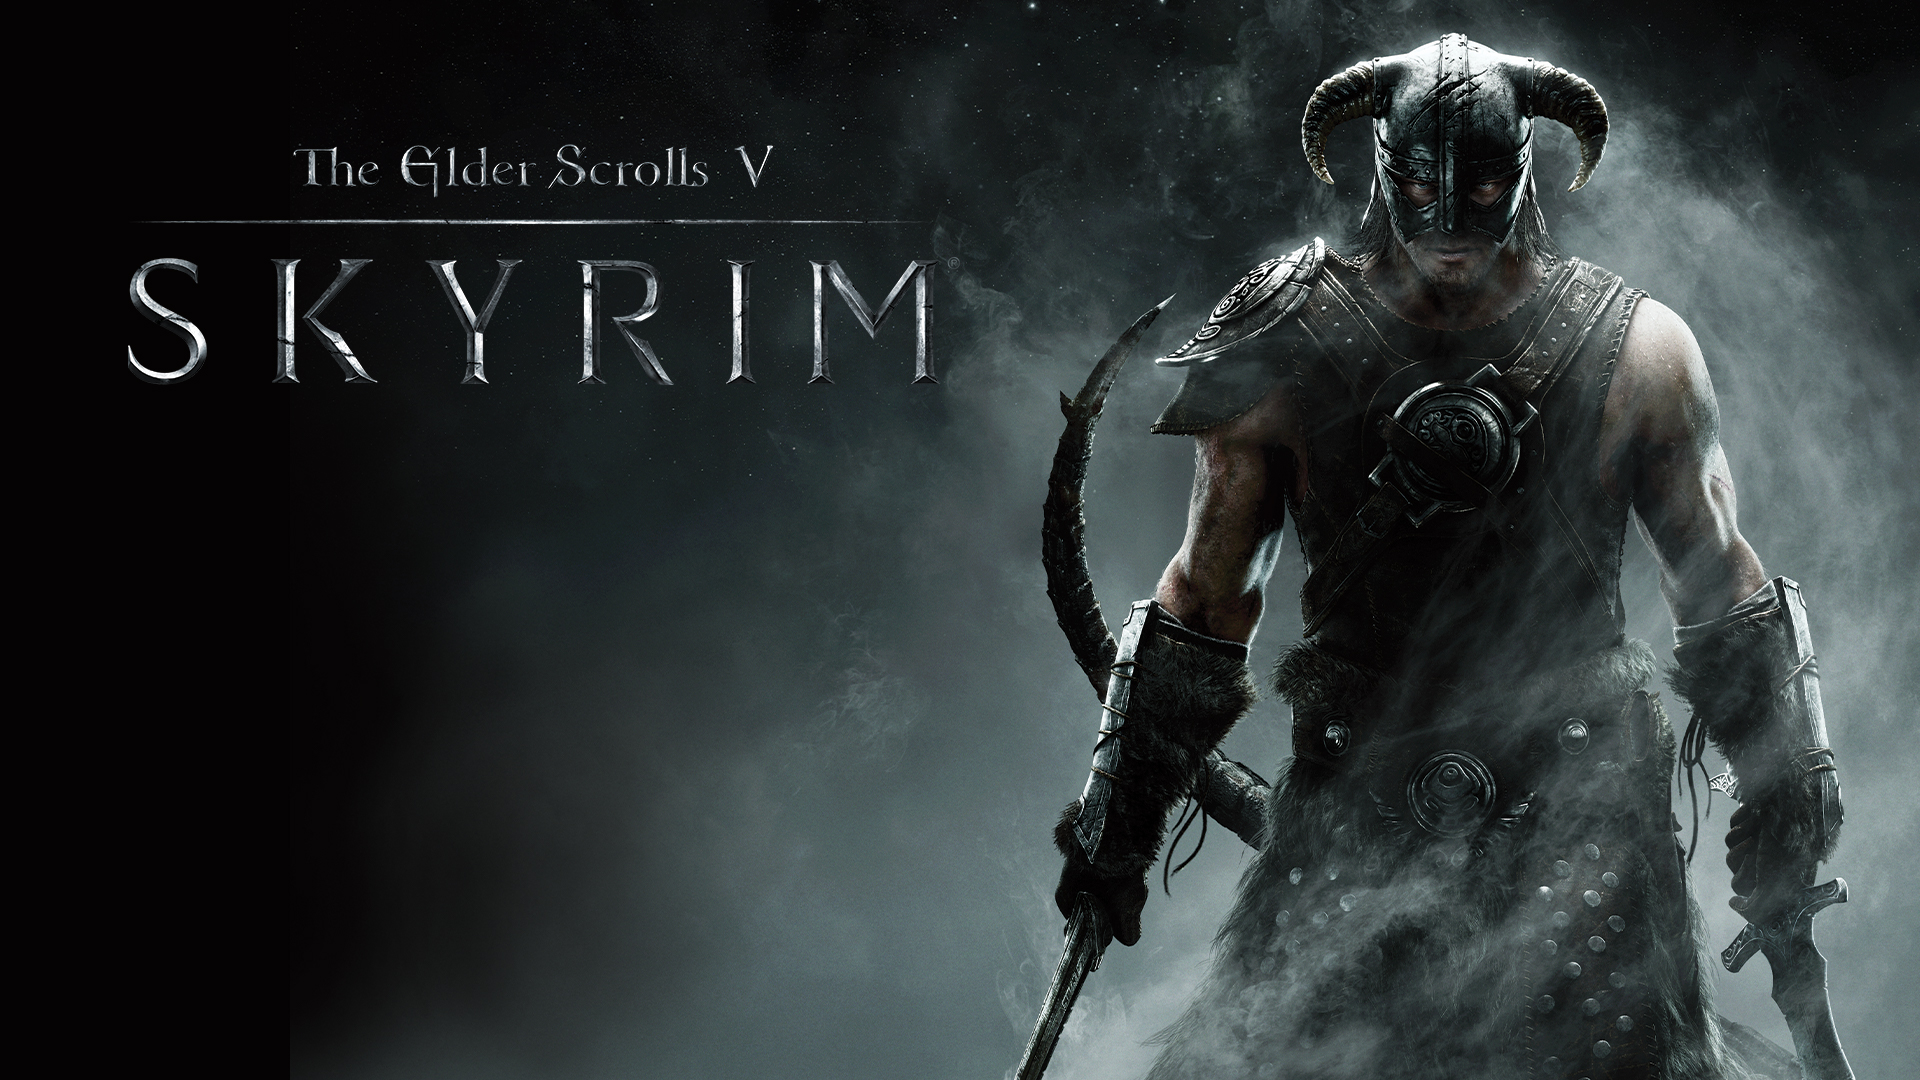 The Elder Scrolls V: Skyrim (Nintendo Switch) $29.99